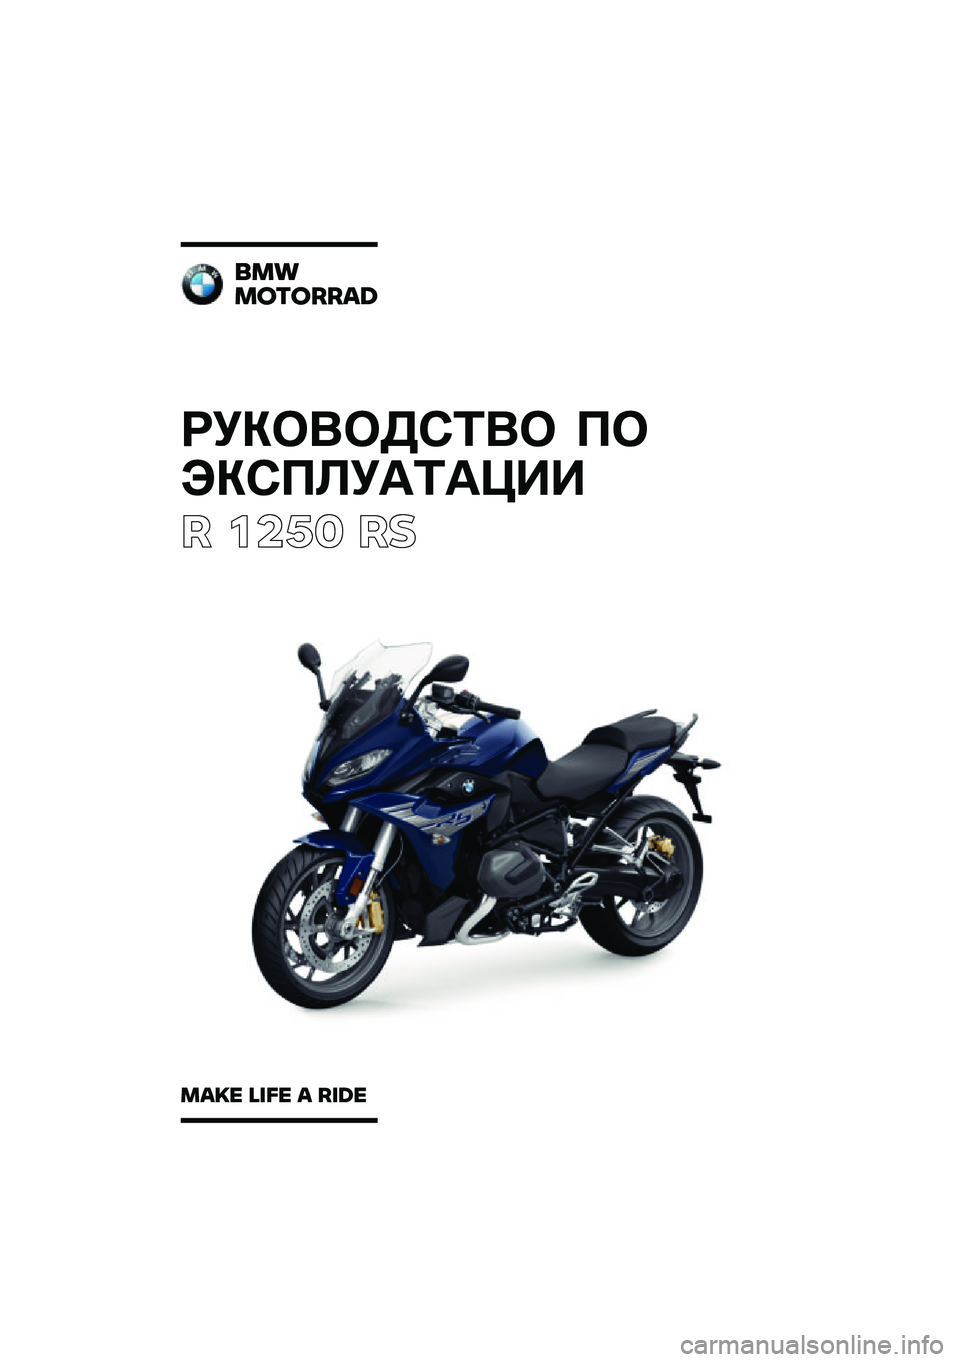 BMW MOTORRAD R 1250 RS 2020  Руководство по эксплуатации (in Russian) ��������\b�	�� �
�
���\b�
�\f��
�	�
���
� ����	 ��
���
�������\b�	
��\b�
� �\f�
�� �\b ��
�	� 